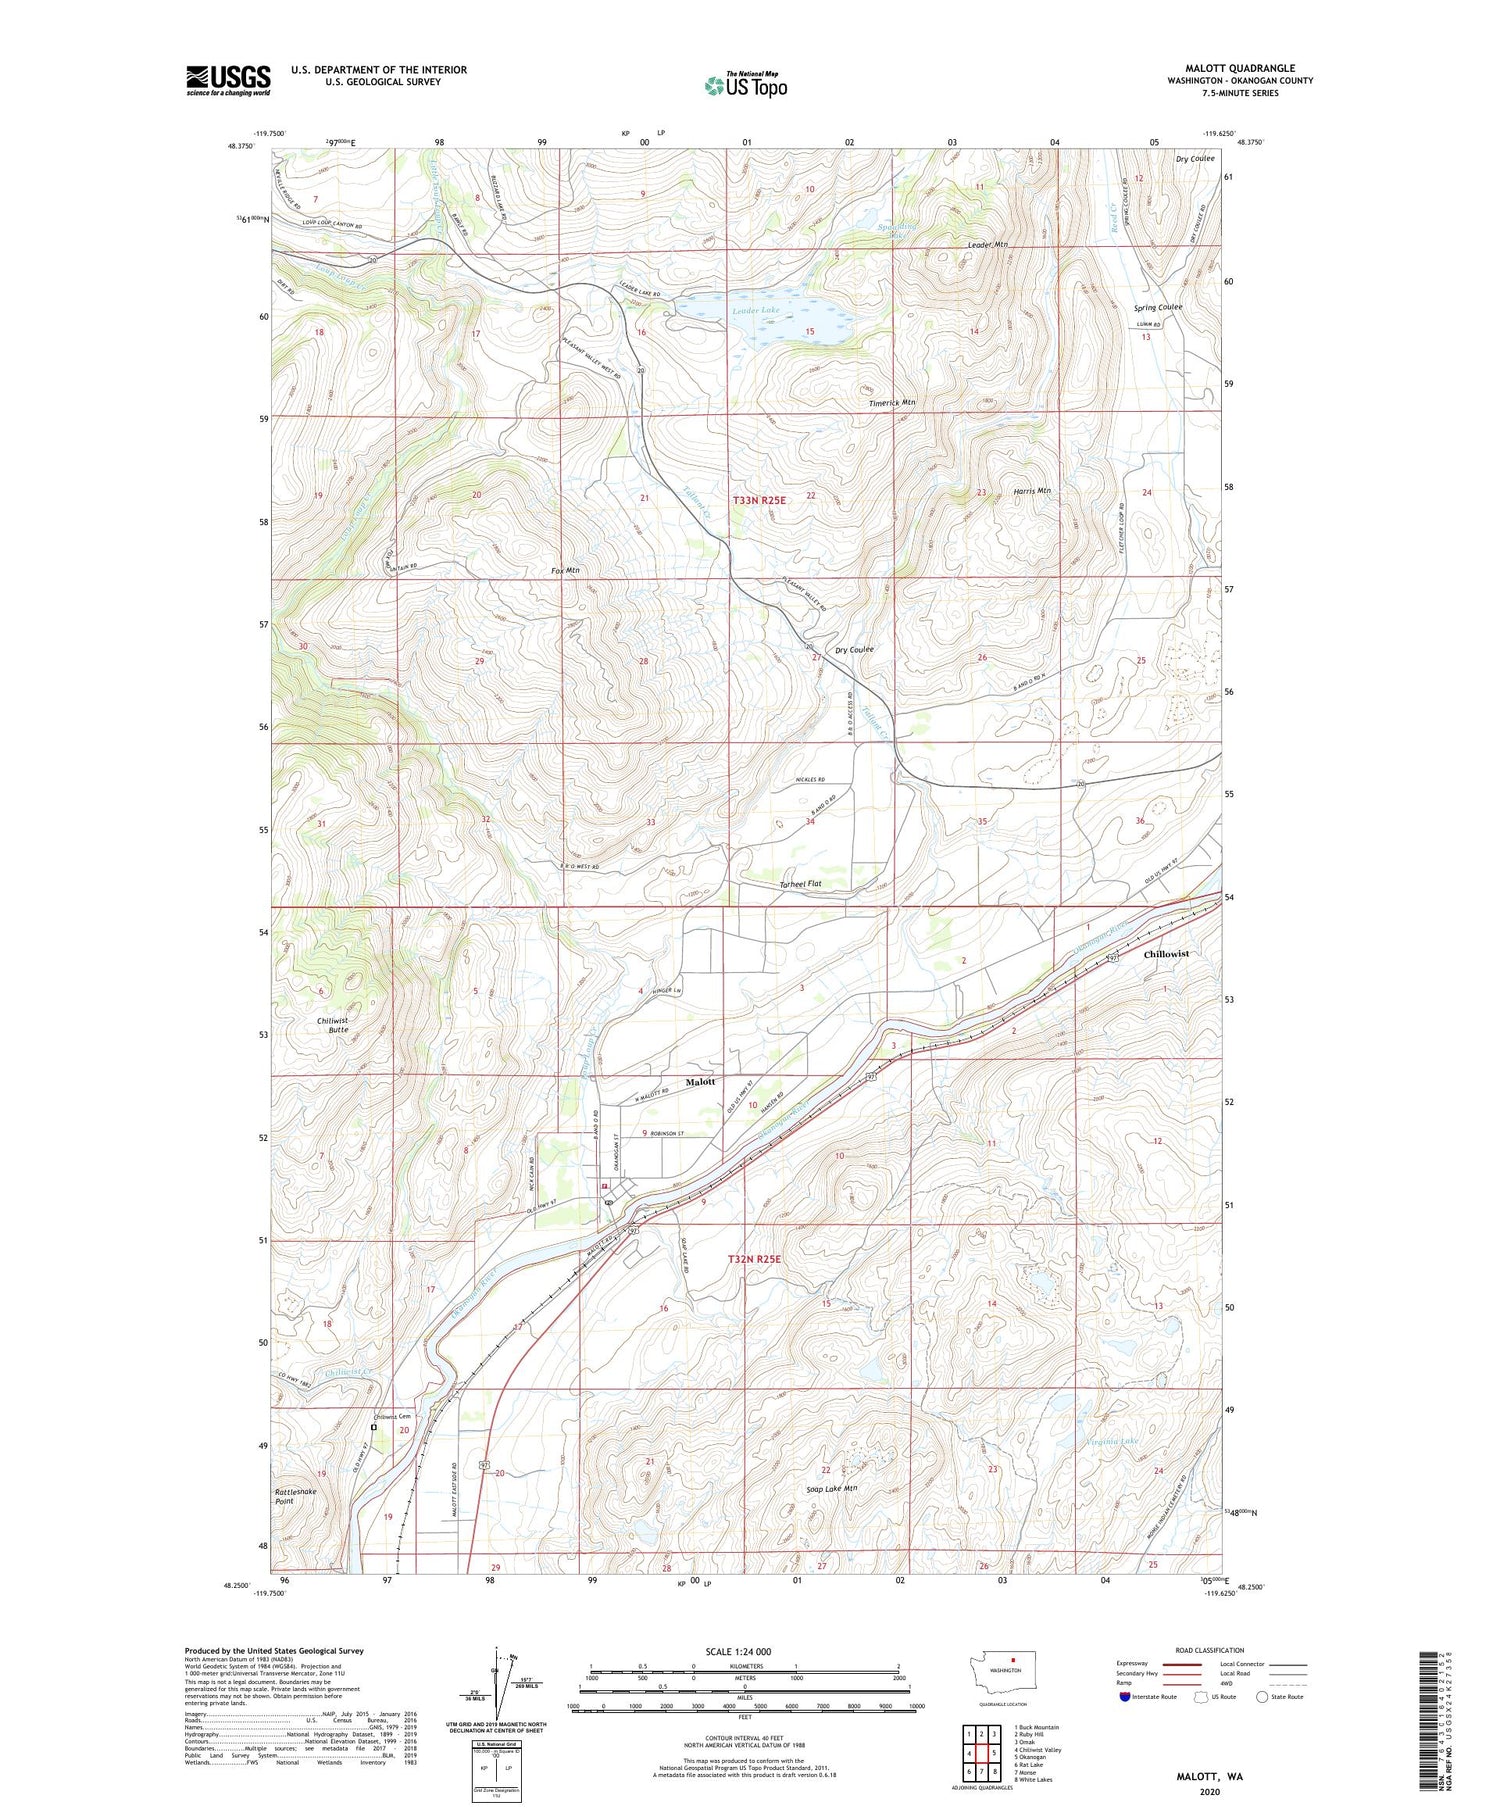 Malott Washington US Topo Map Image